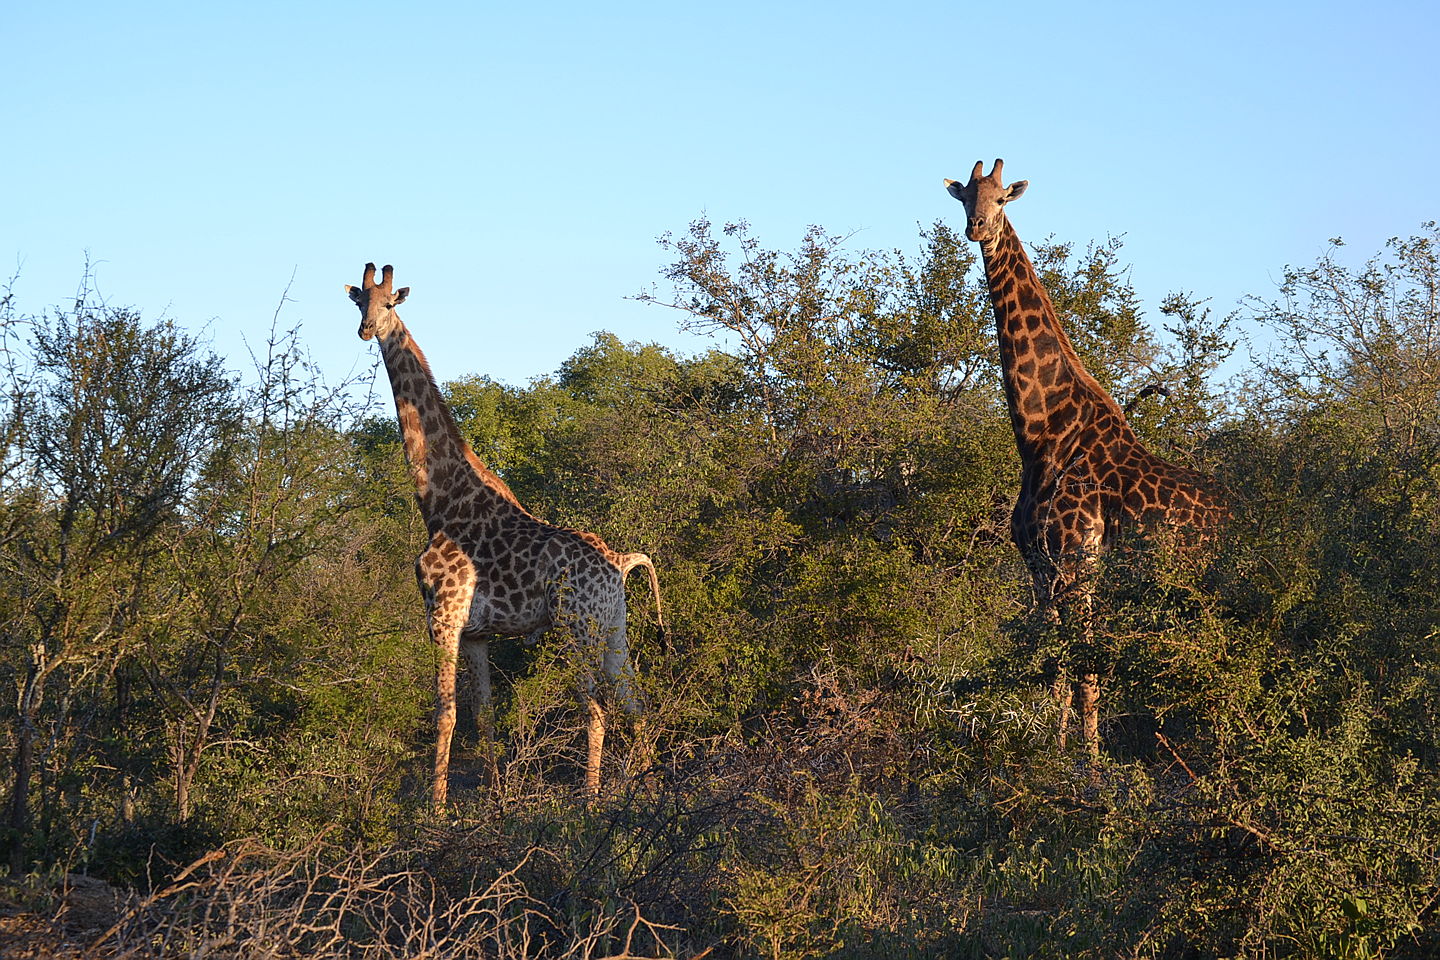  Hoedspruit
- giraffe